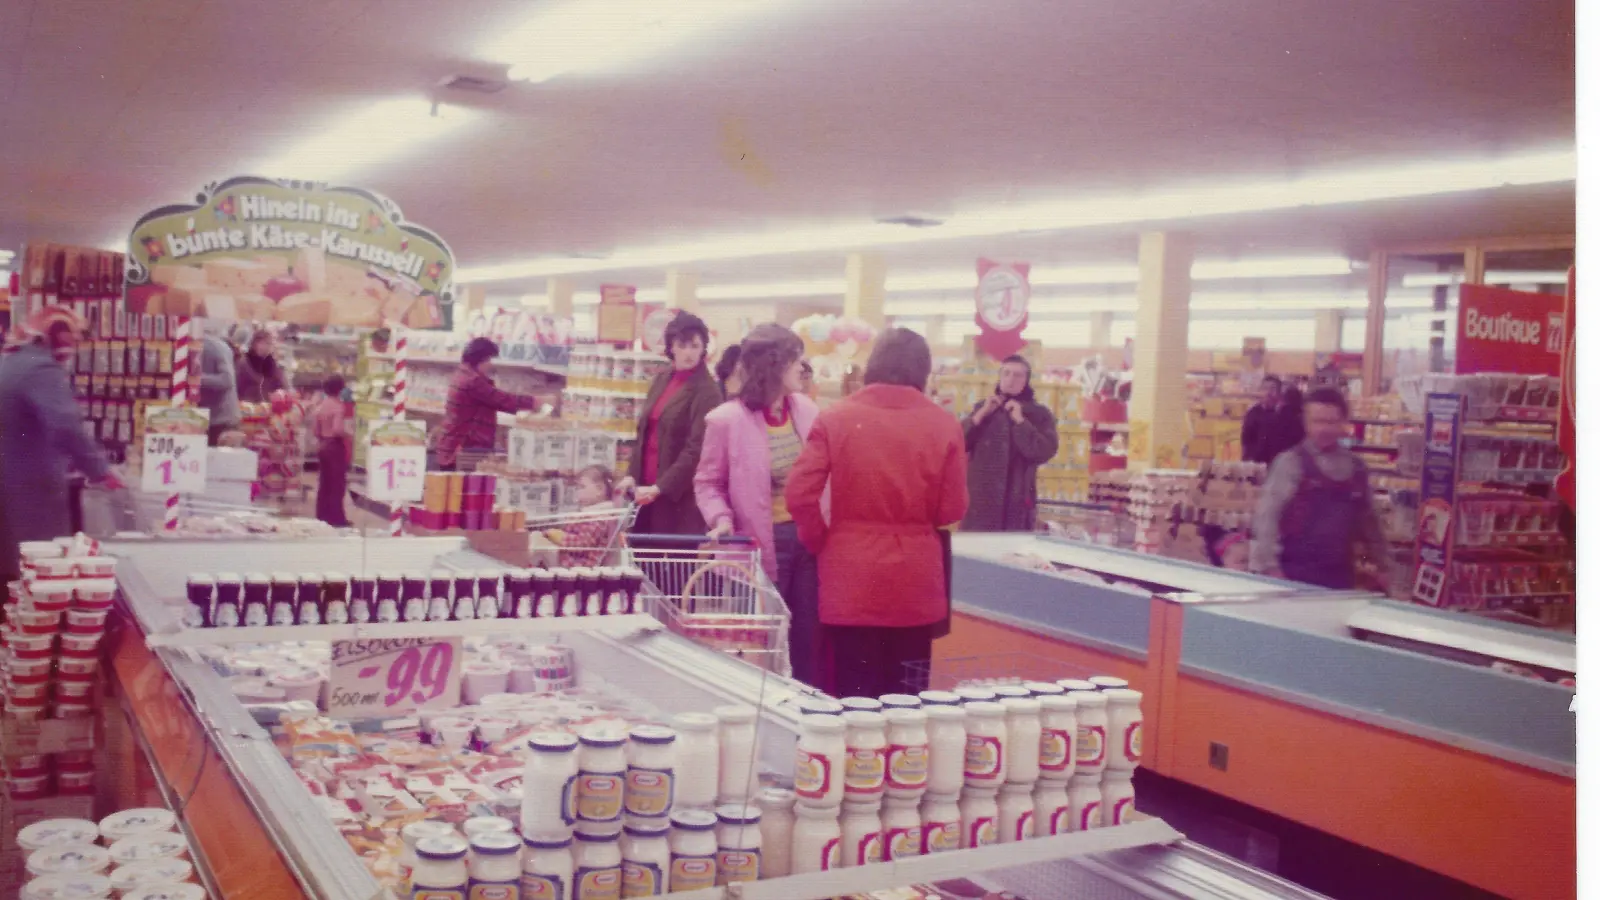 Andrang herrschte bei der Eröffnung des Supermarktes von Familie Fuchs in Bechhofen. Für viele war das ein neues Einkaufserlebnis. (Foto: privat)